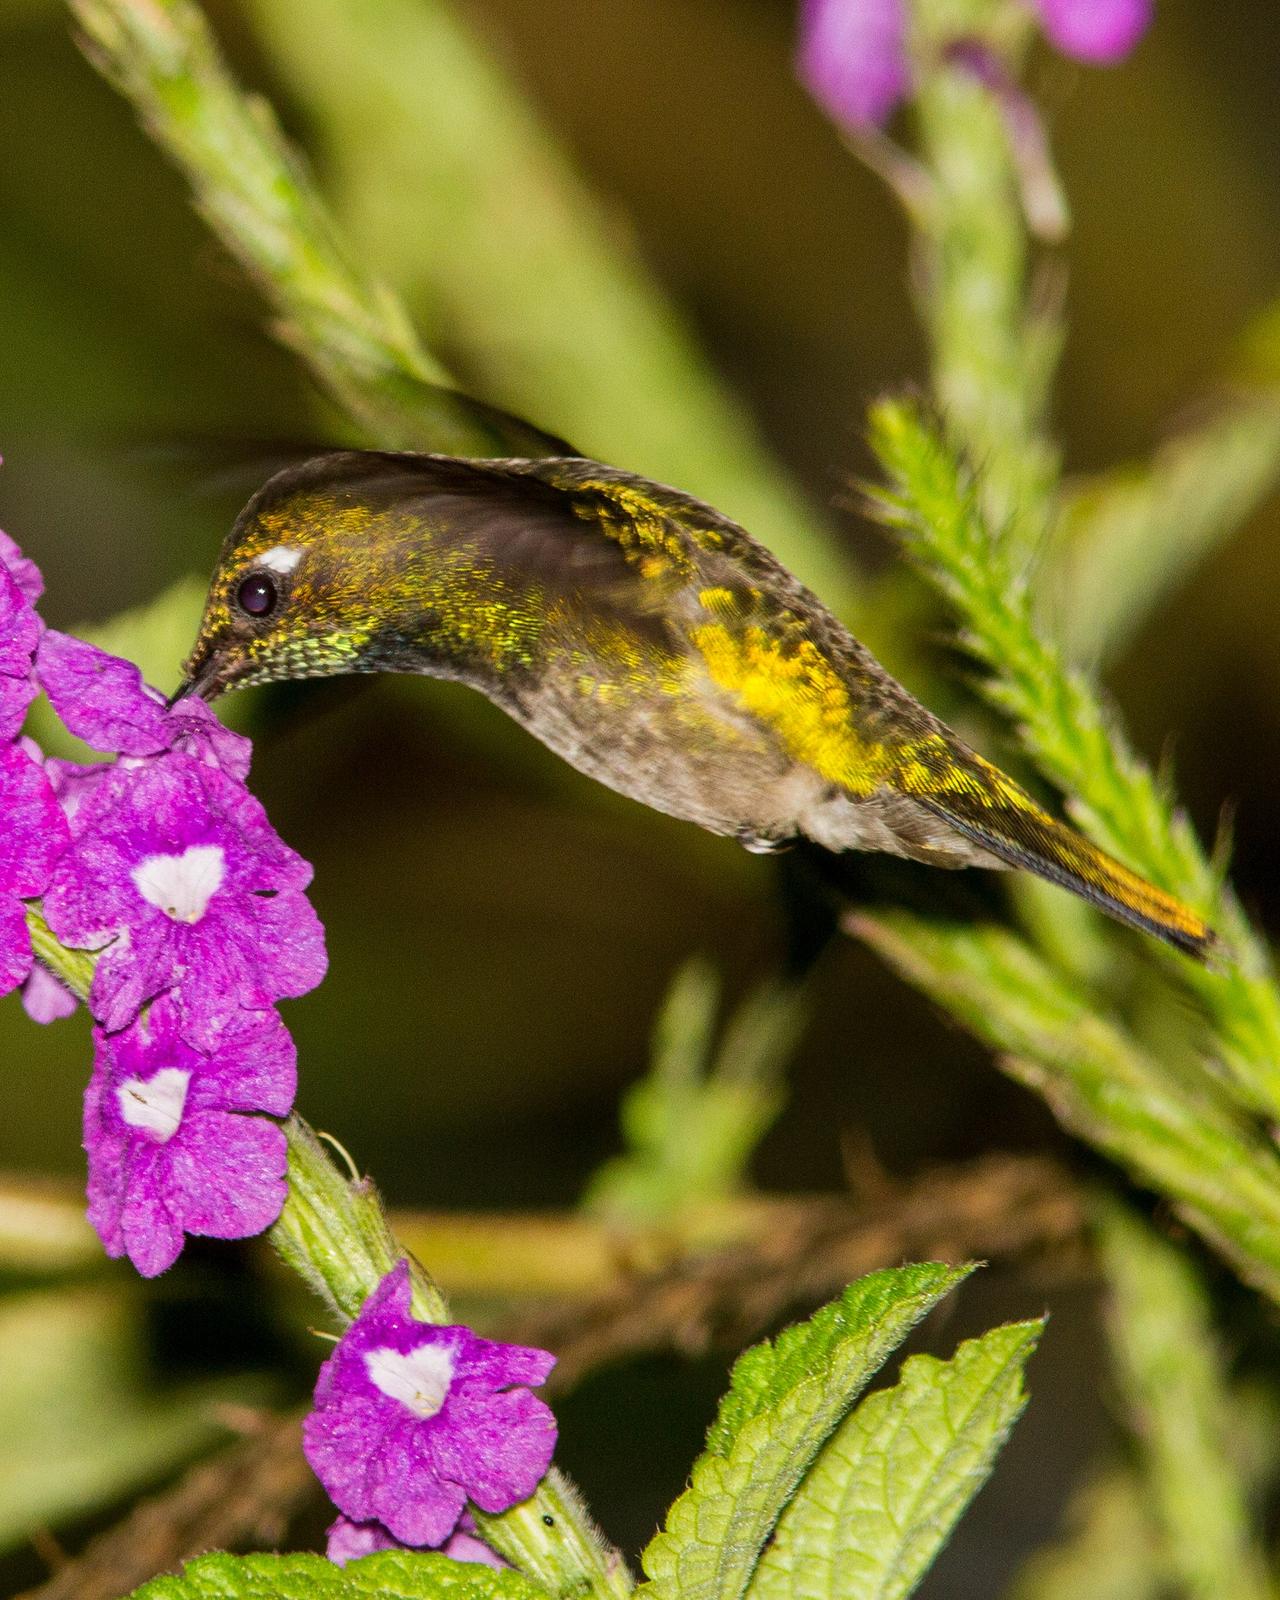 Emerald-chinned Hummingbird Photo by Dan Irizarry